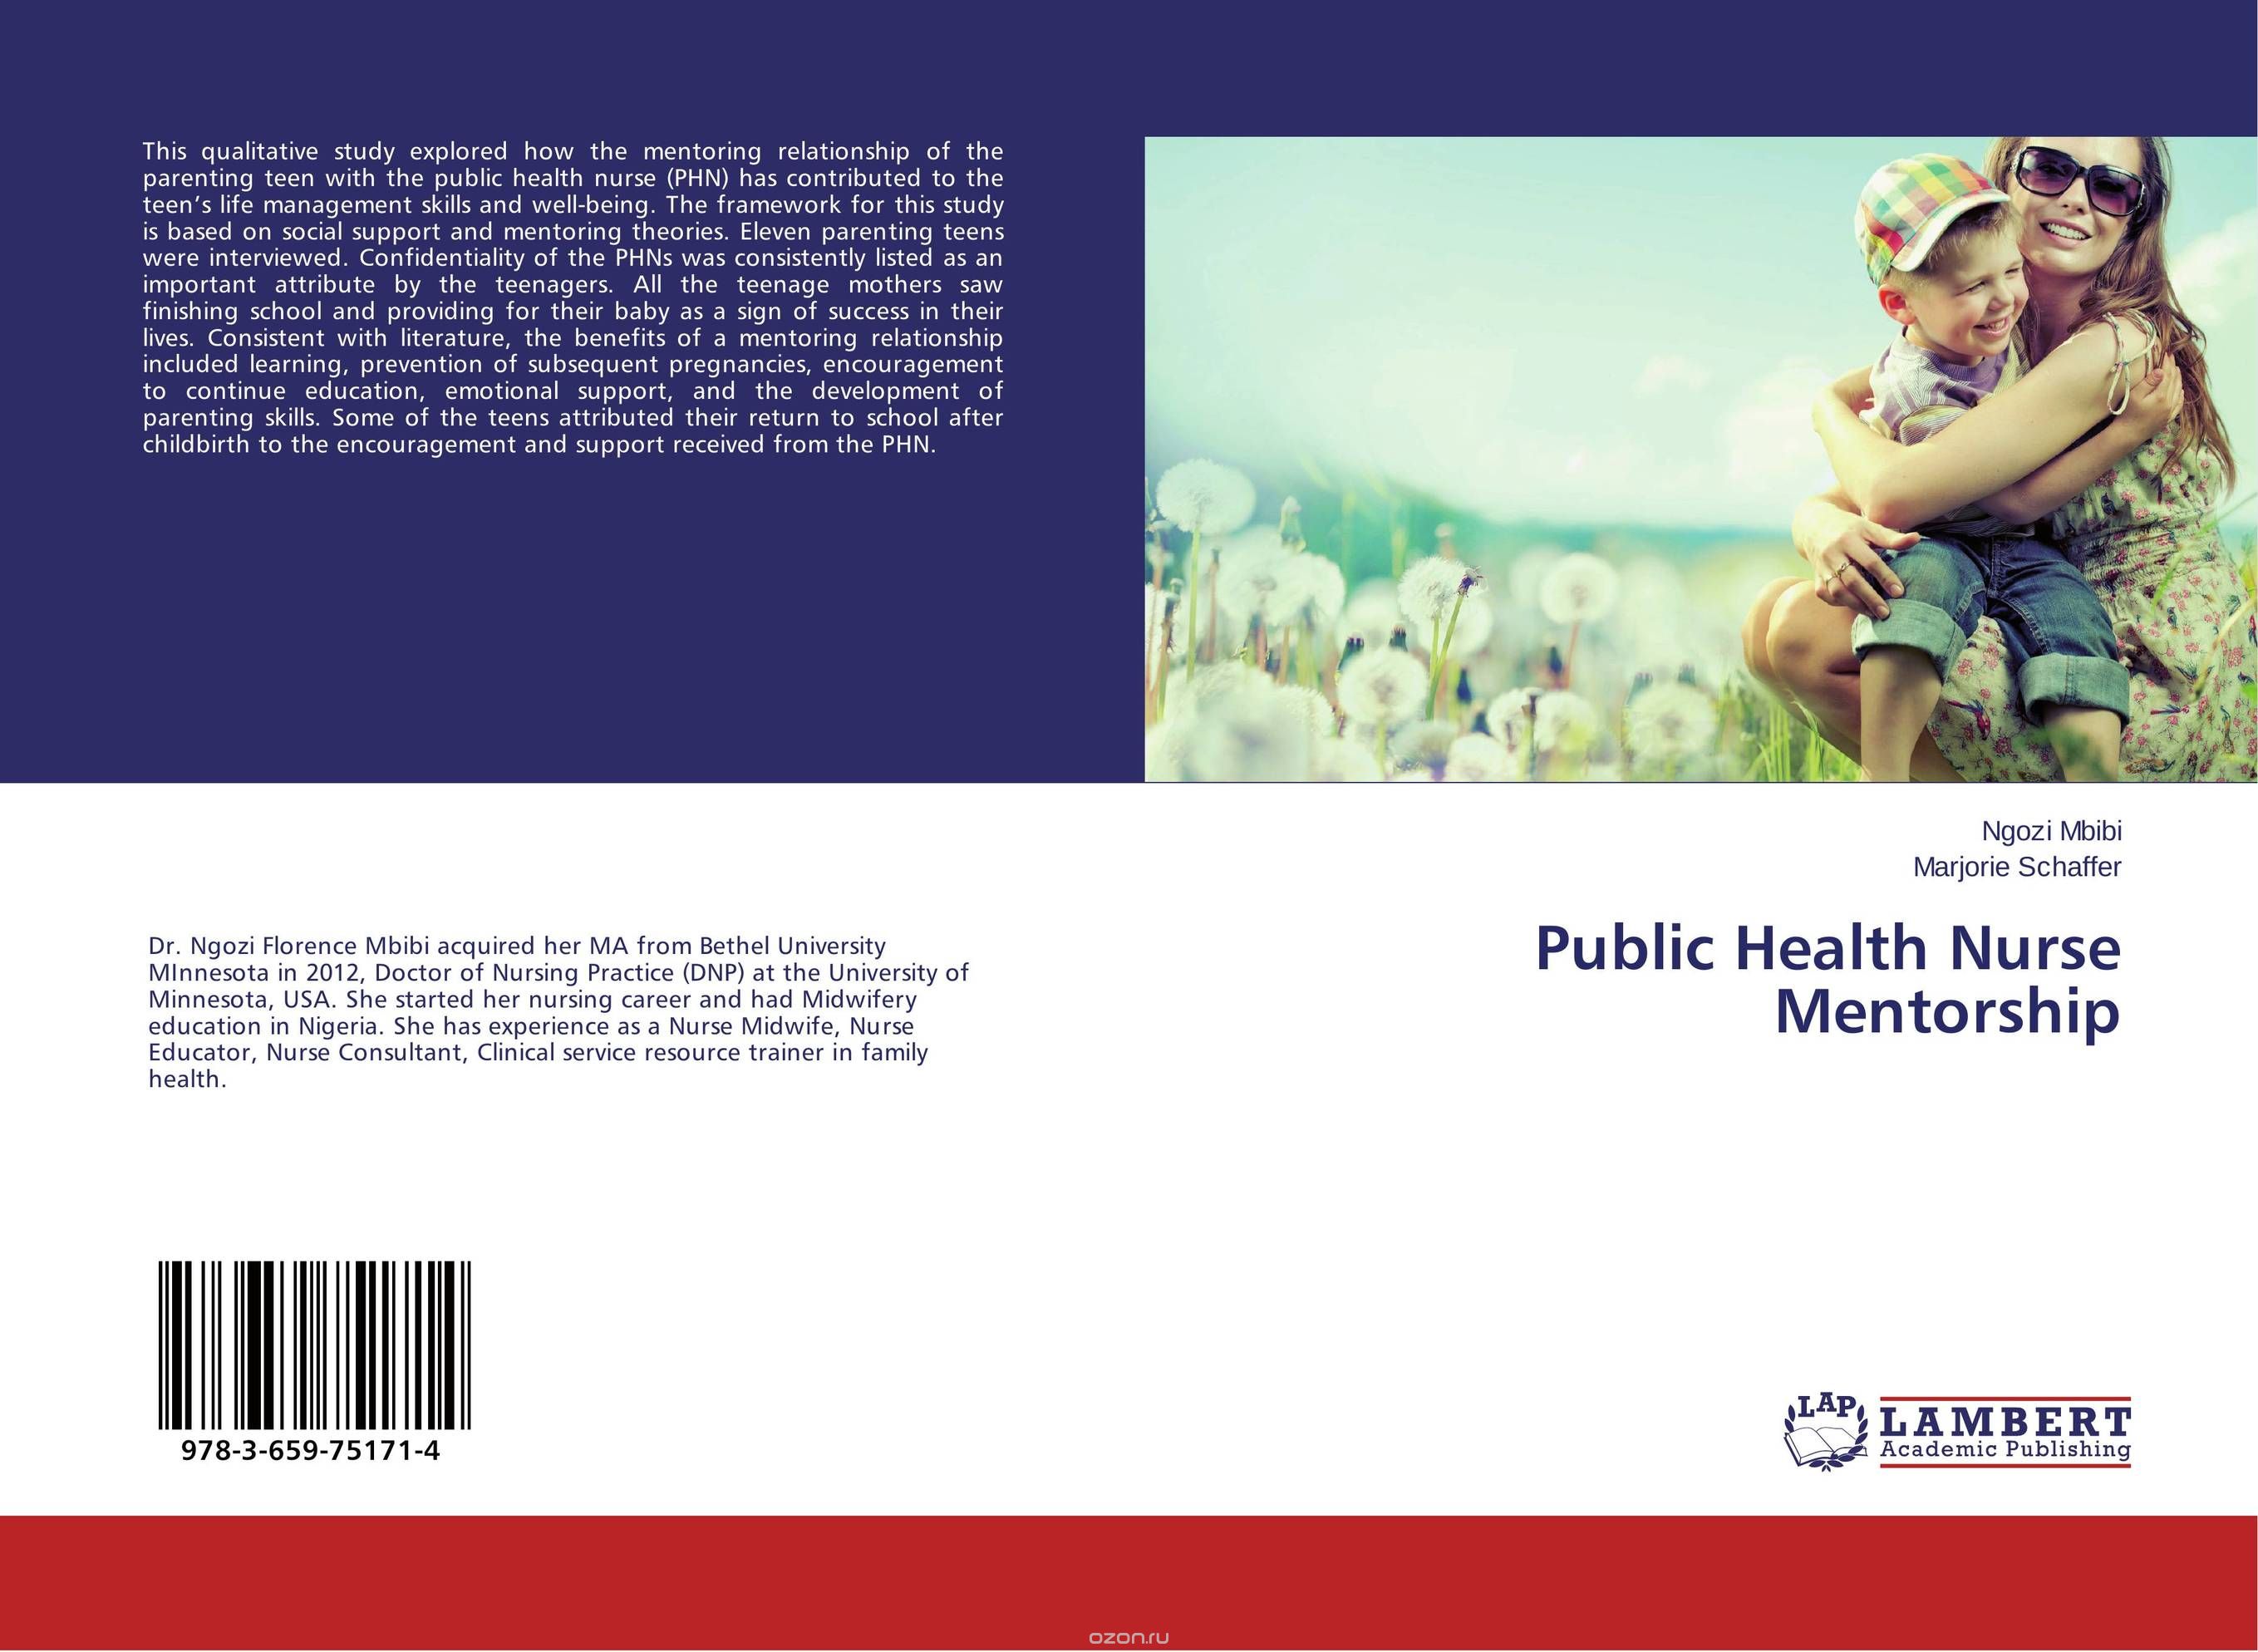 Public Health Nurse Mentorship